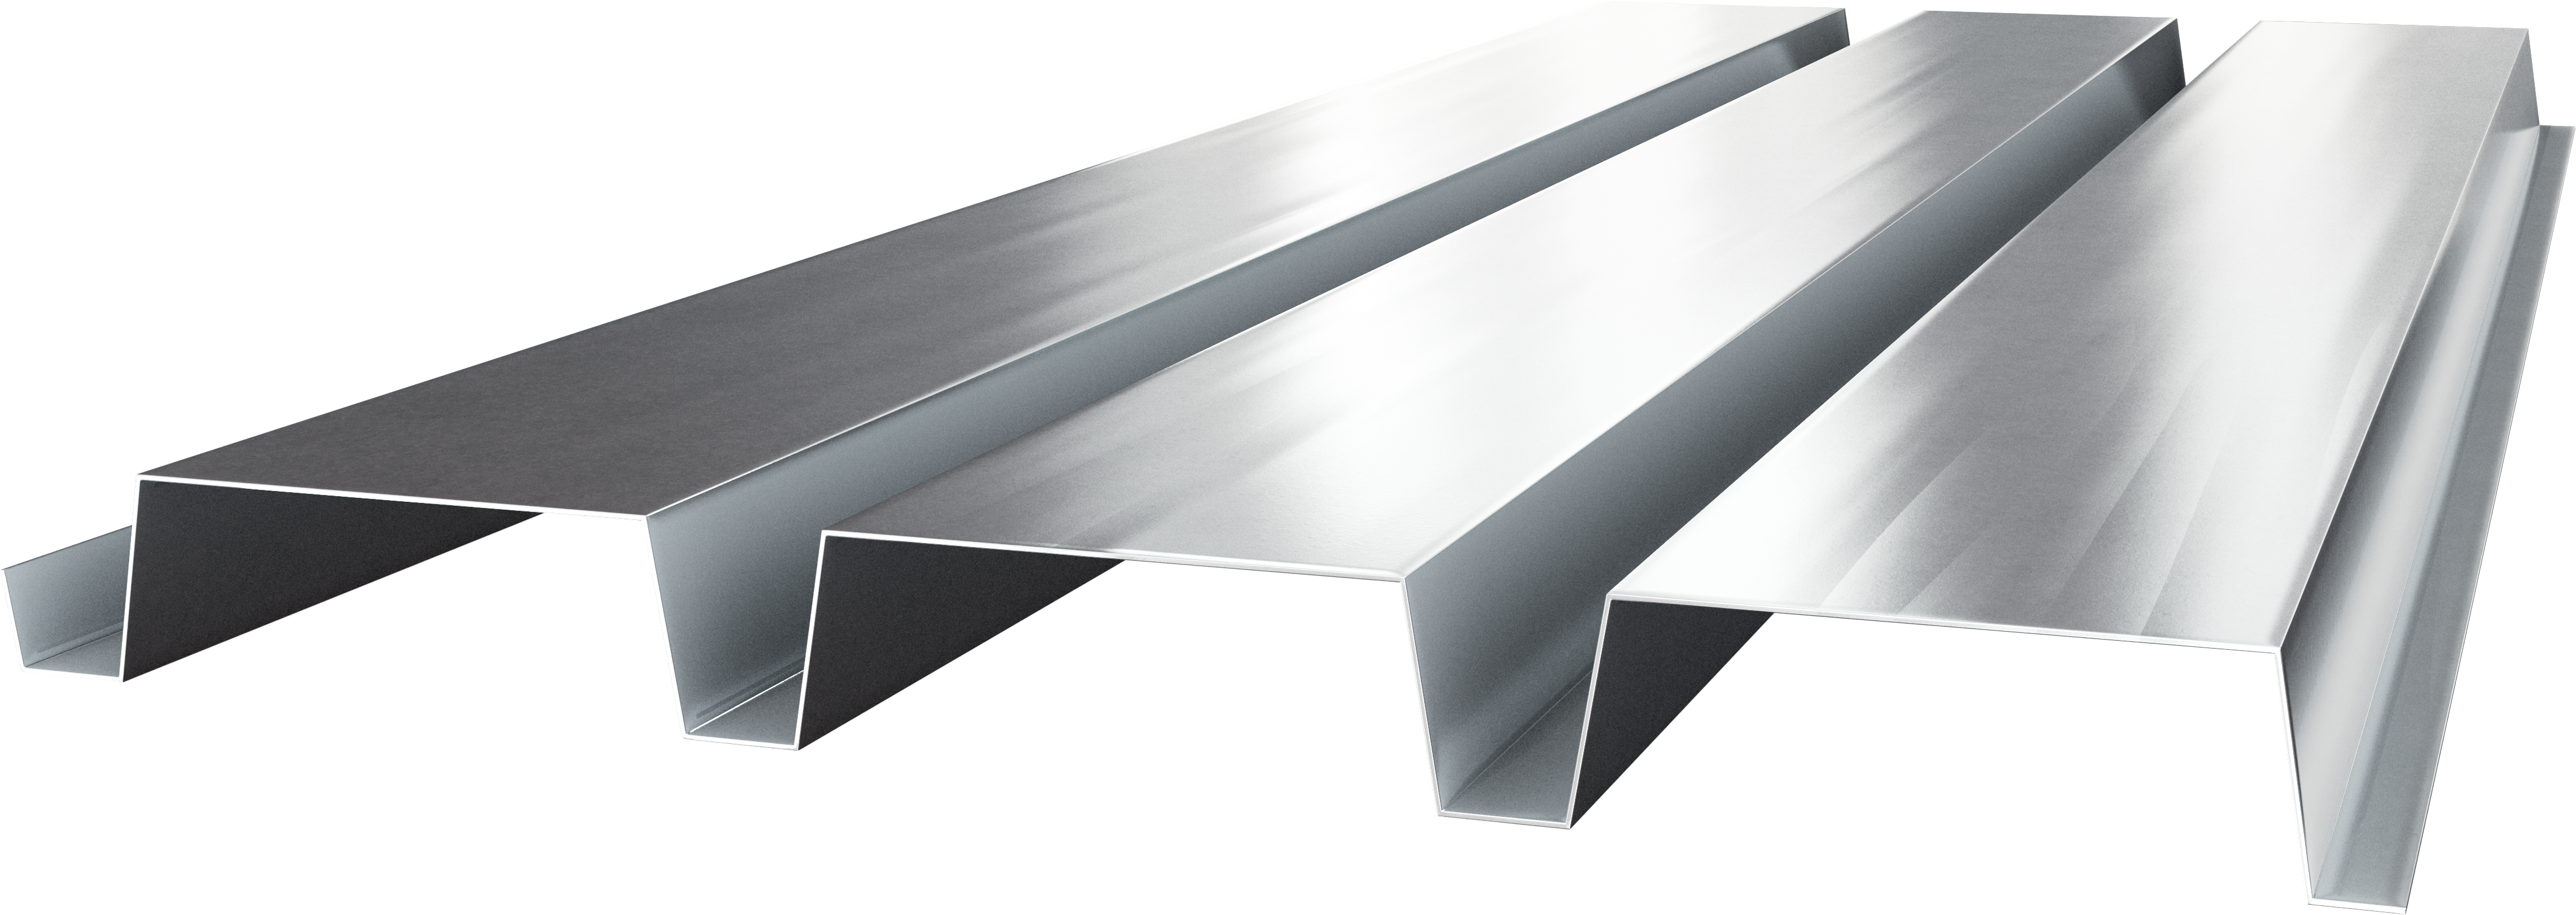 3.0 N Deep Metal Roof Deck| Metal Rolled Steel | Cordeck